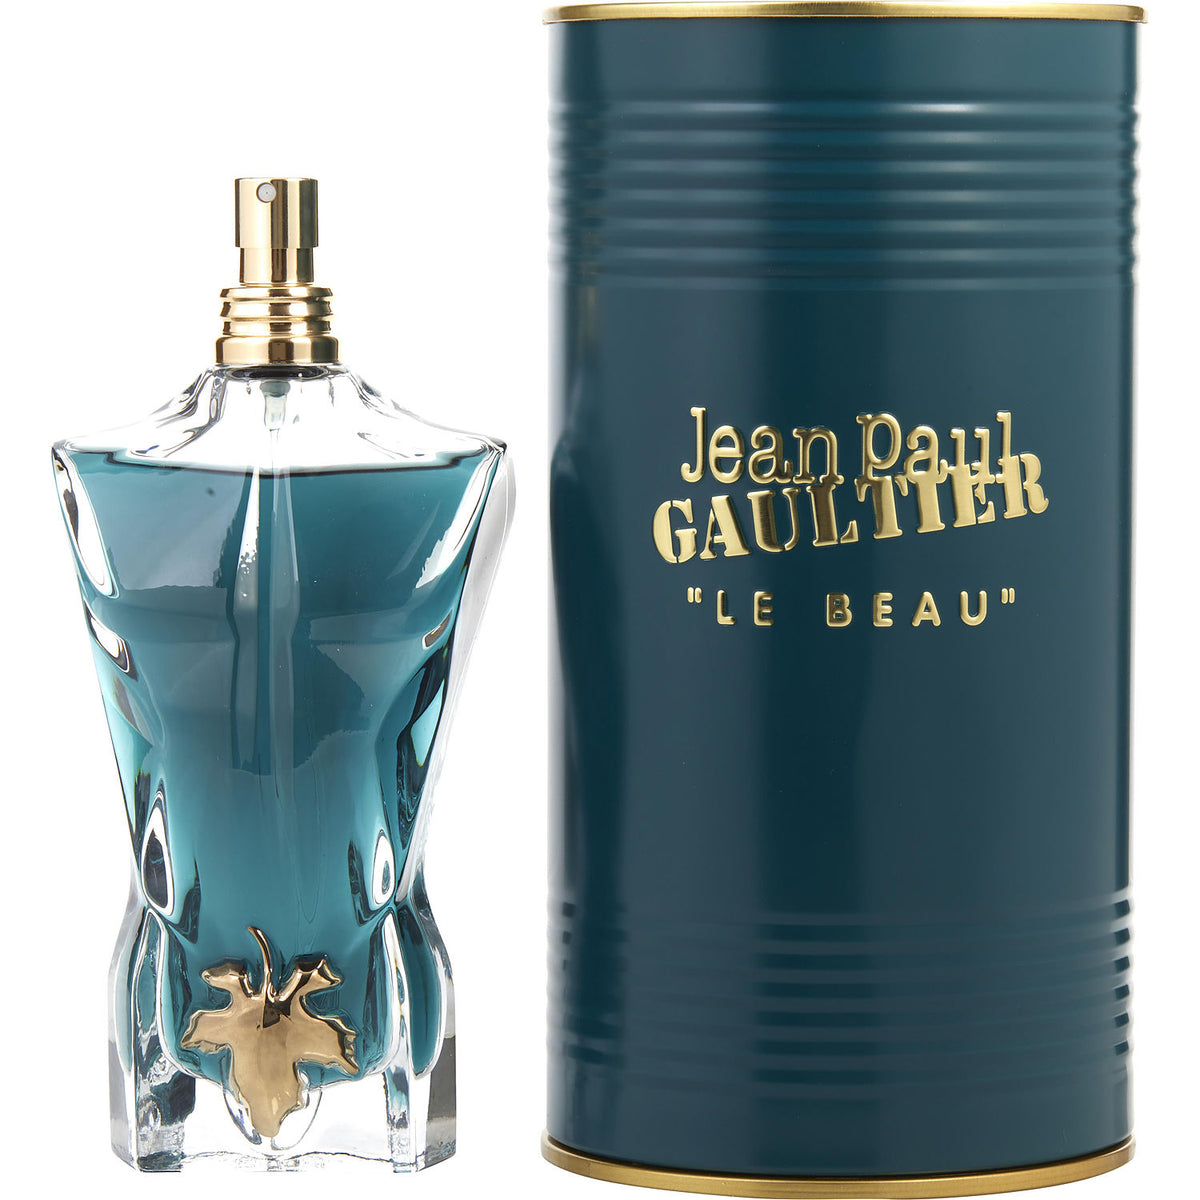 Vulx Perfumaria - Decant Le Beau Jean Paul Gaultier Perfume